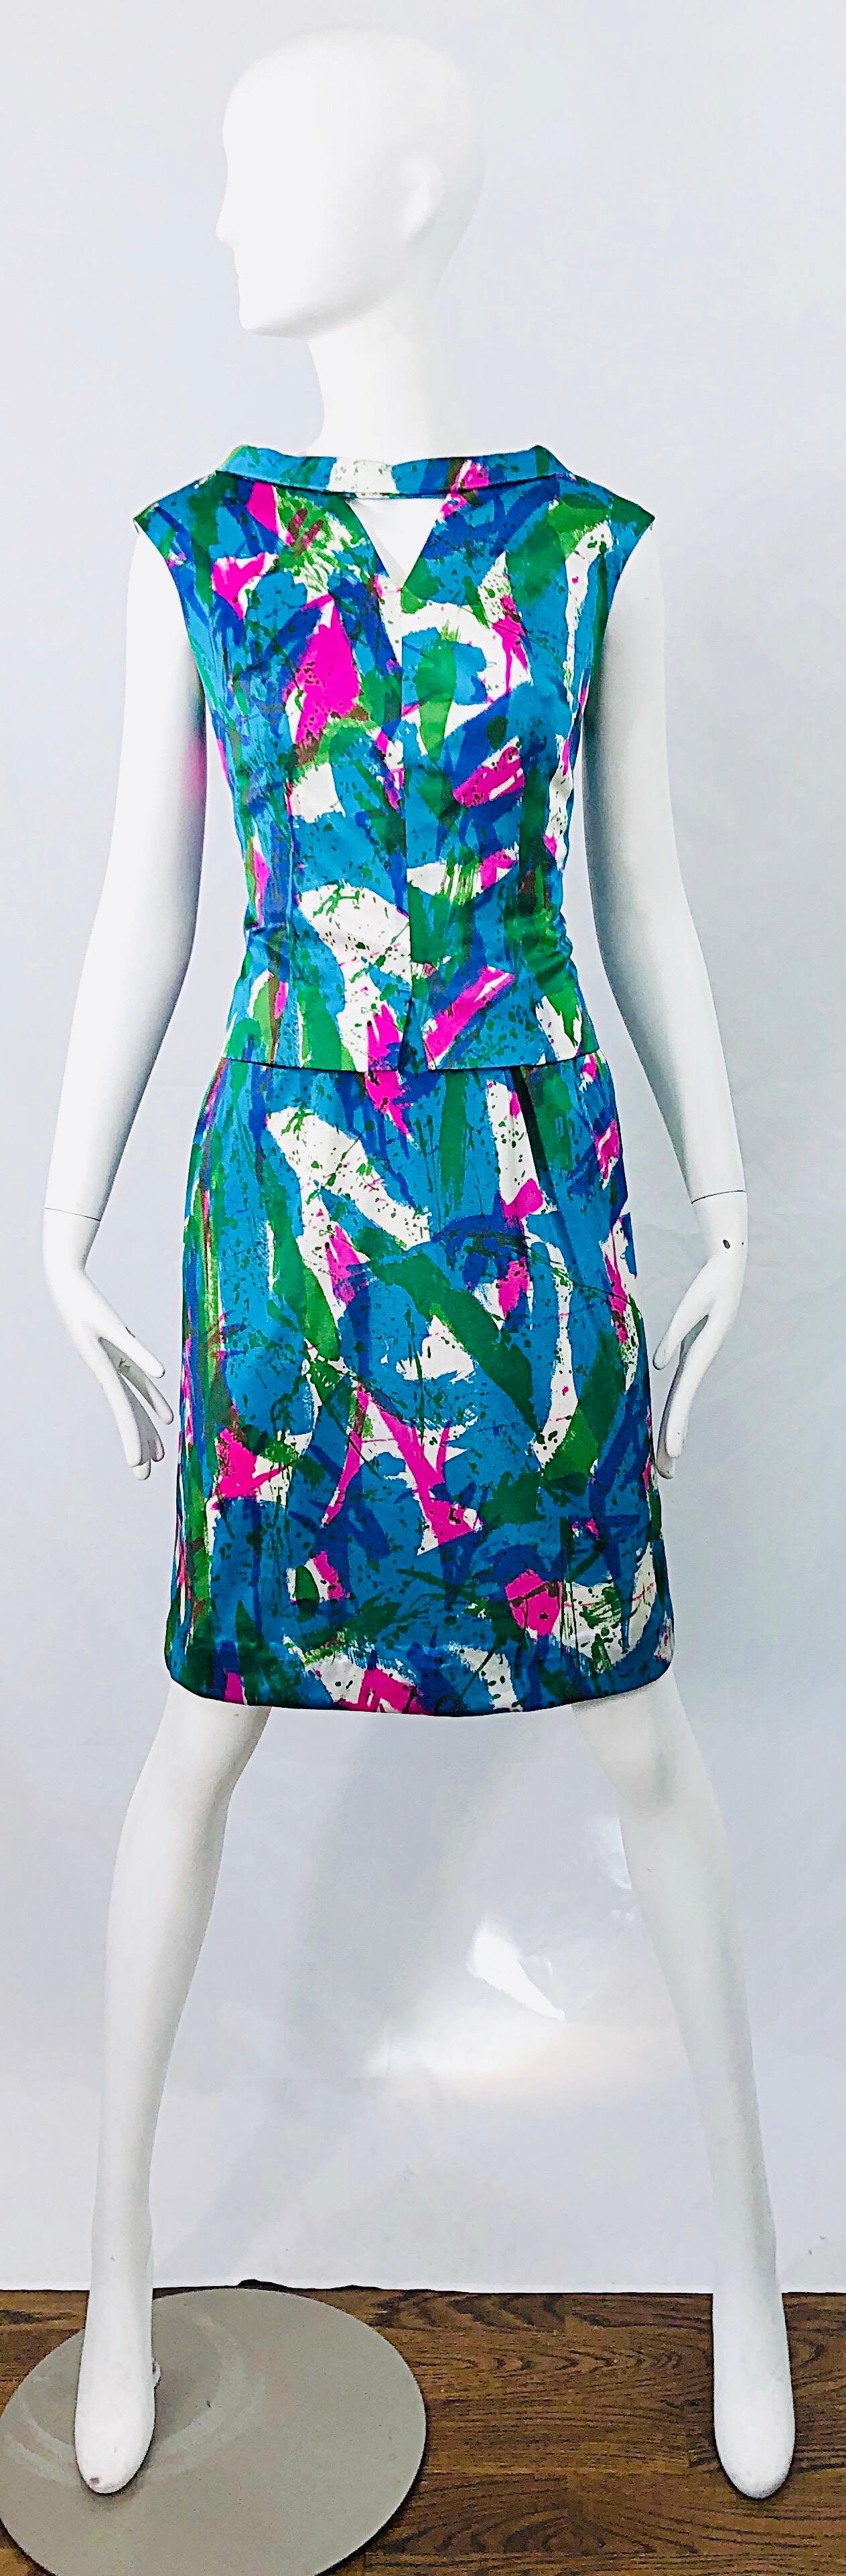 Chic Mitte der 60er Jahre lebhaften farbigen abstrakten Druck zweiteiligen Mantel Kleid und Top ! Mit leuchtenden Neonfarben in Pink, Blau, Türkis, Grün und Weiß. Oberteil mit mittigem Ausschnitt in der oberen Nackenmitte. Das Kleid hat ein